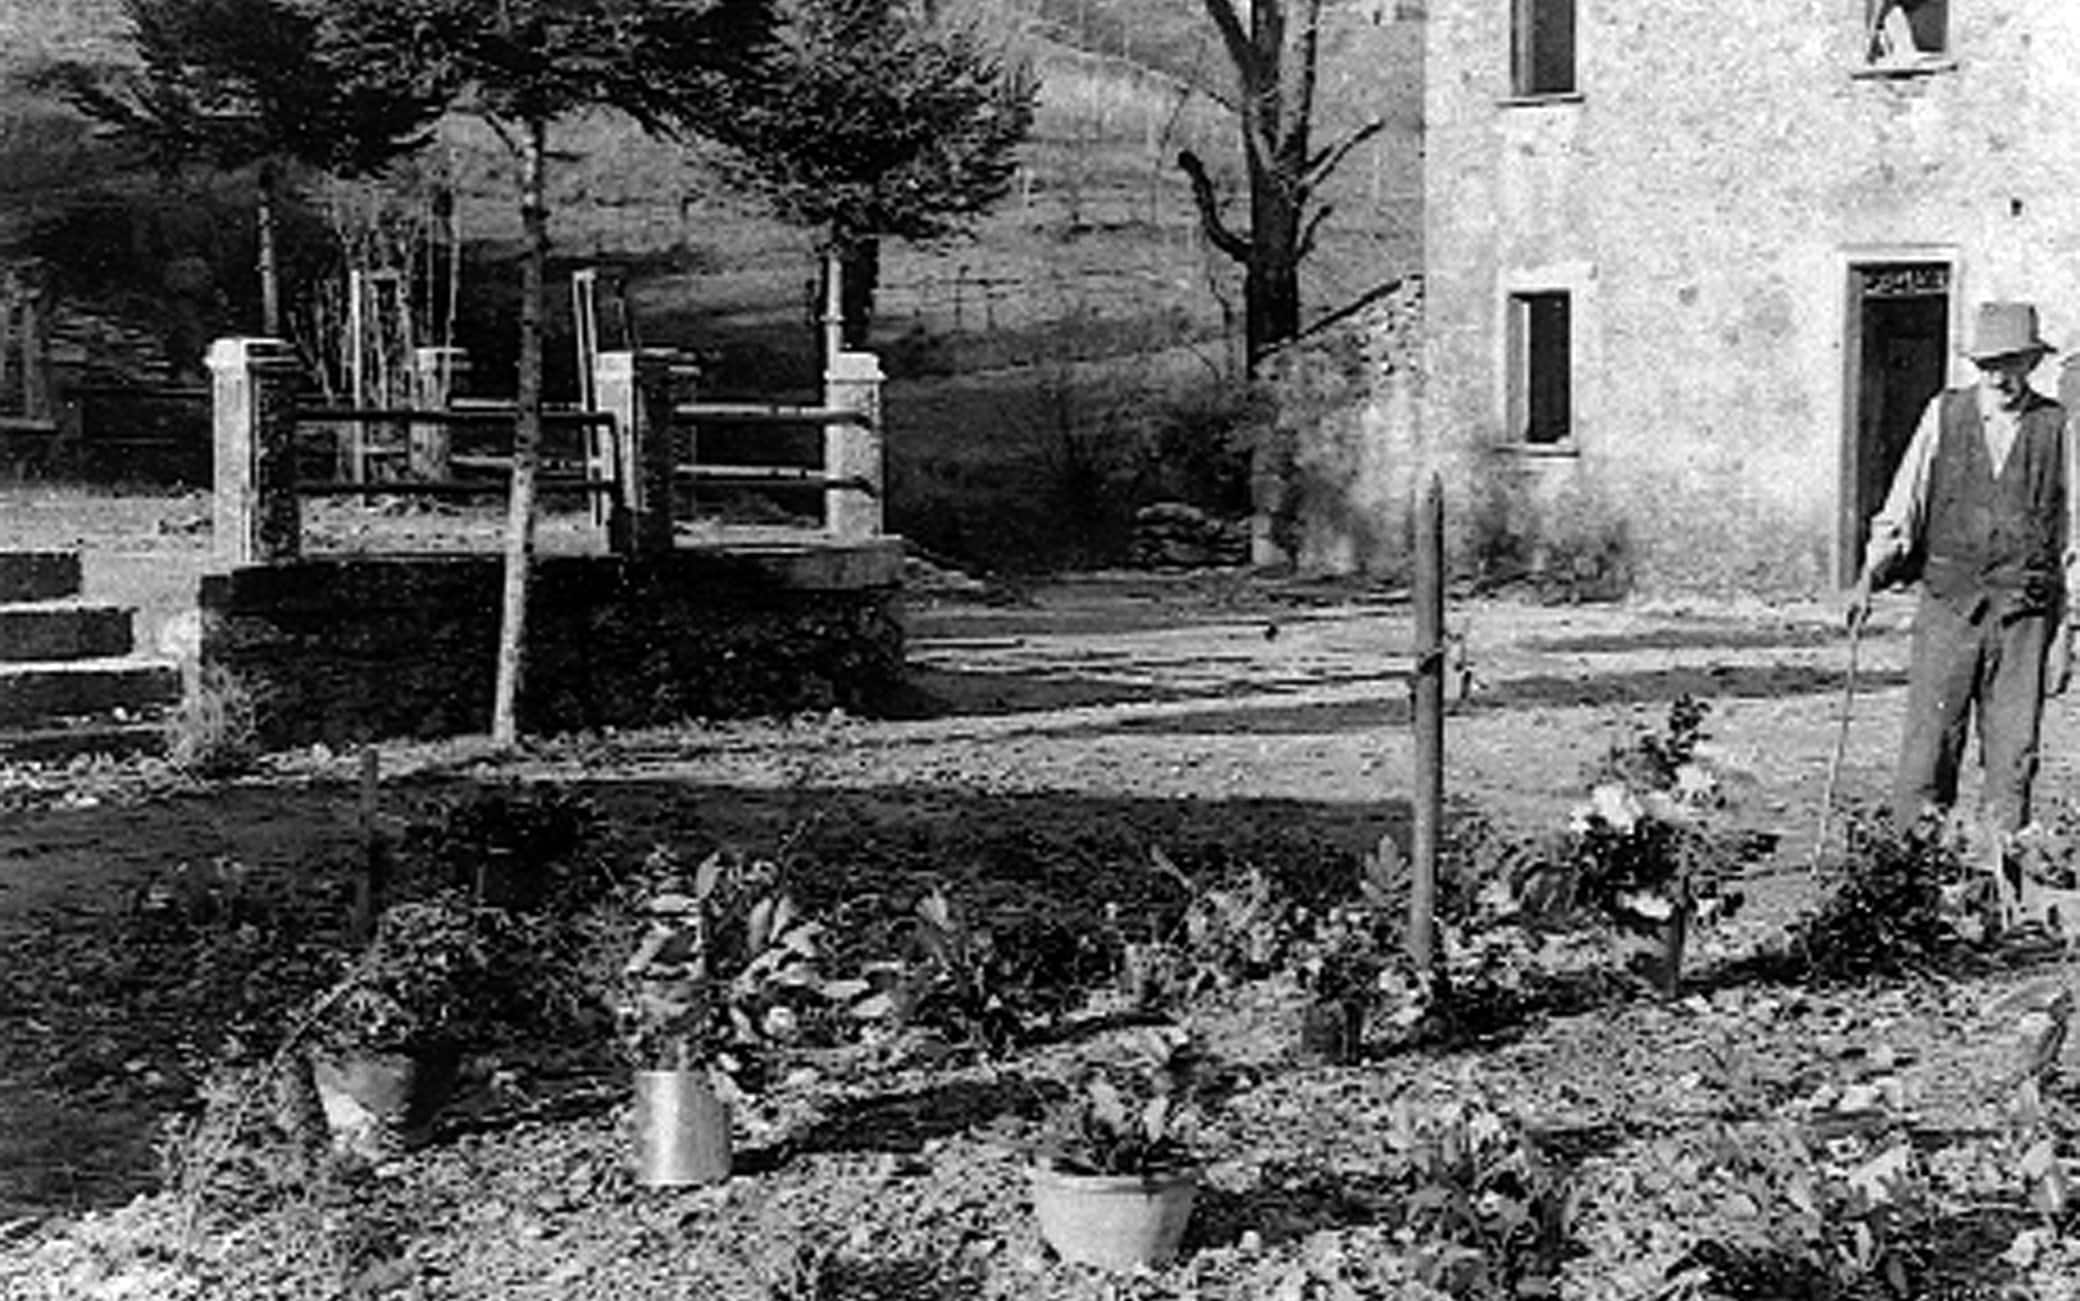 La fossa comune ricavata davanti alla piazza della chiesa di Sant'Anna a Stazzema (Lucca)  dove nell'agosto 1944 si consumo' la strage nazista in cui furono uccise circa 560 persone, quasi tutti donne e bambini, tra cui Don Innocenzo Lazzeri.    
ANSA/UFFICIO STAMPA MUSEO DI STAZZEMA   +++HANDOUT NO SALES - EDITORIAL USE ONLY+++